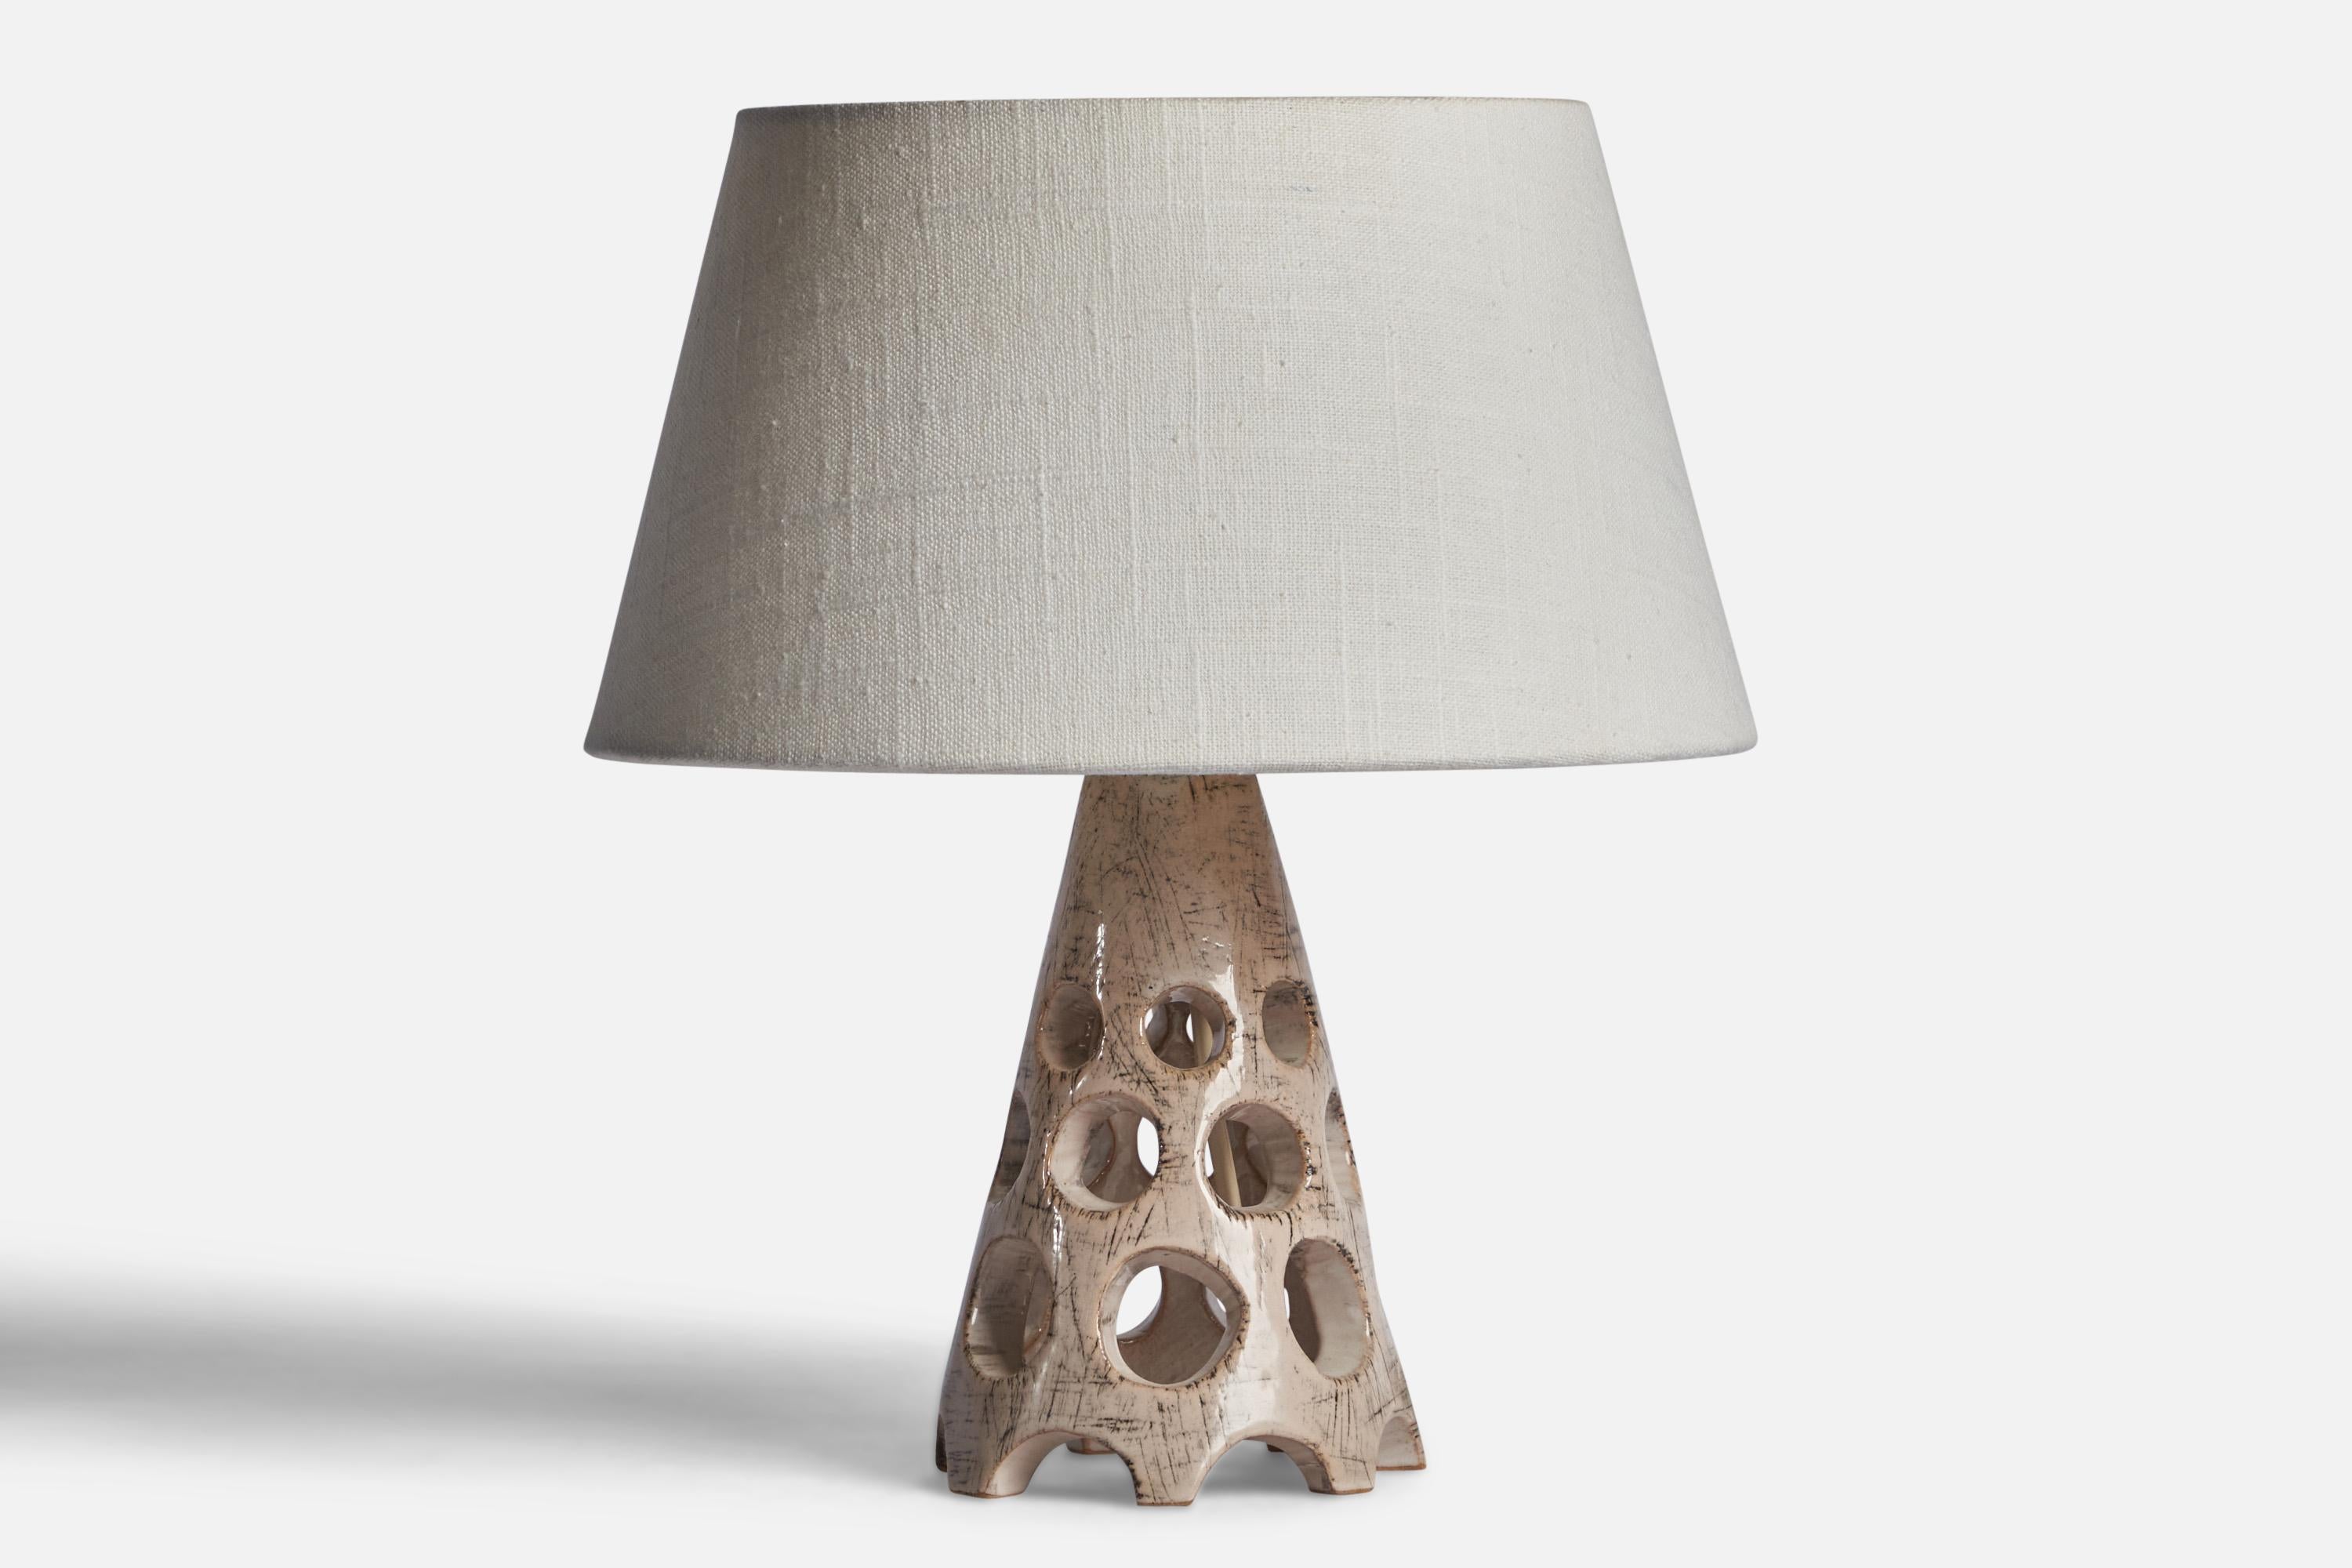 Tischlampe aus grau glasiertem Steingut, entworfen und hergestellt von Michael Andersen, Bornholm, Dänemark, um 1960.

Abmessungen der Lampe (Zoll): 8,5